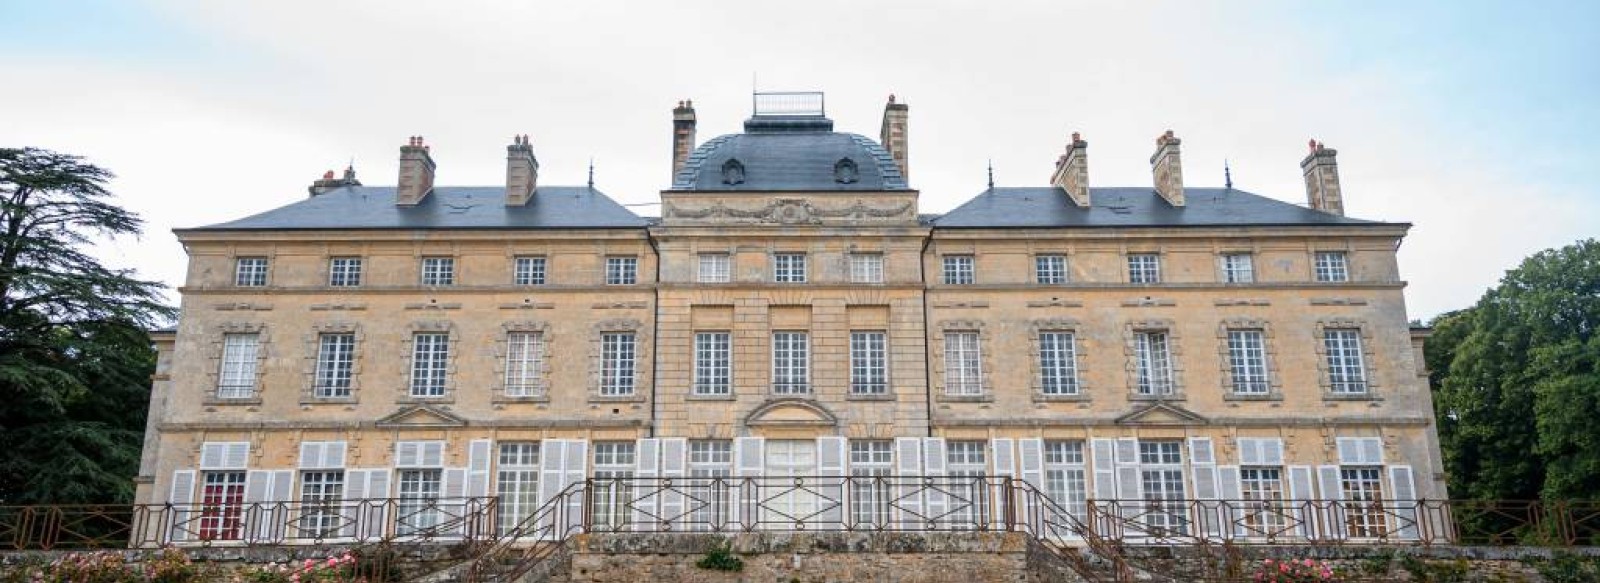 Conservatoire de la Pivoine (Chateau de Sourches)